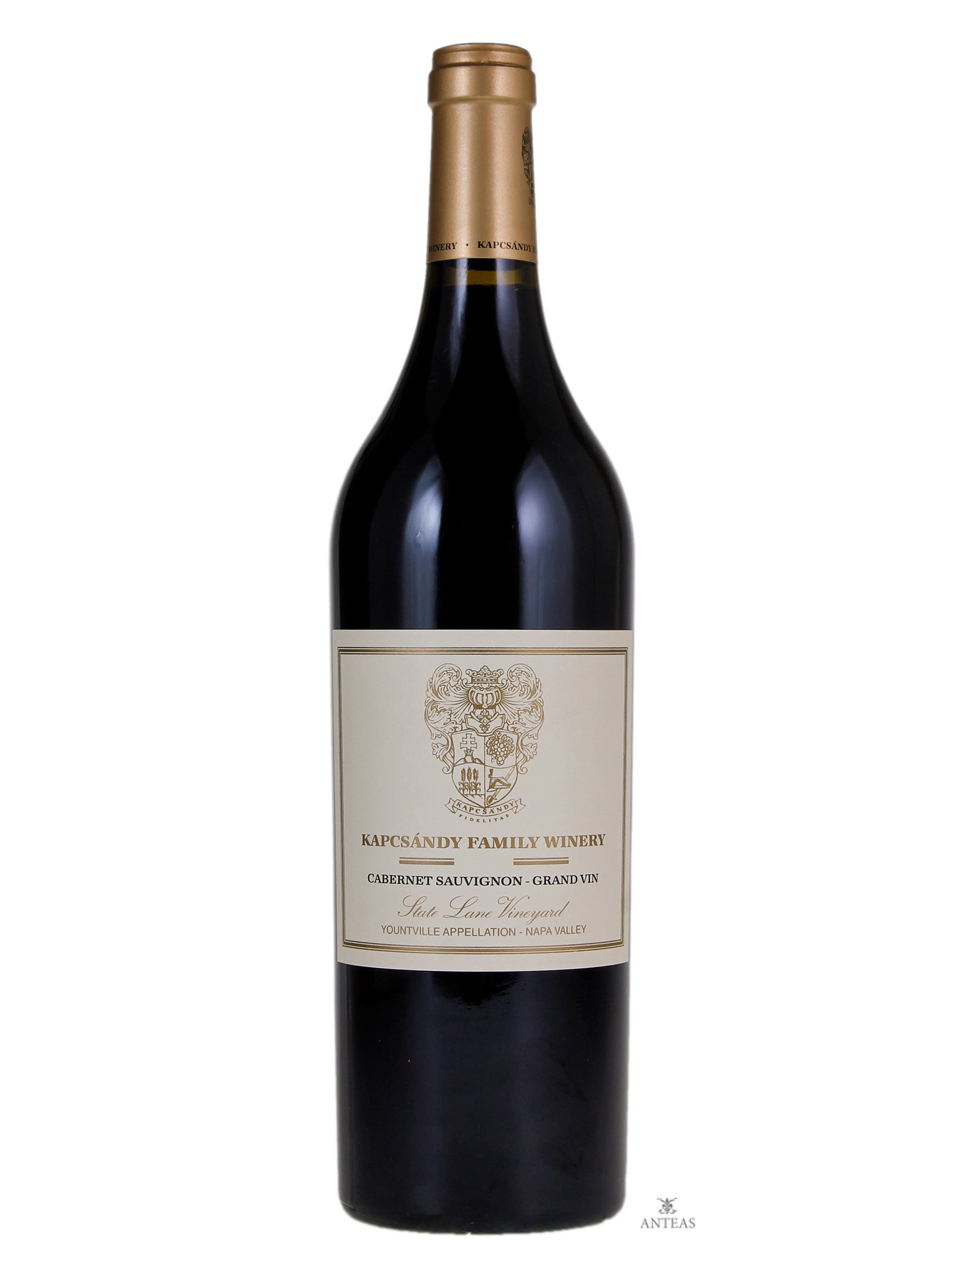 Kapcsandy Family Winery – Cabernet Sauvignon State Lane Vineyard 2005